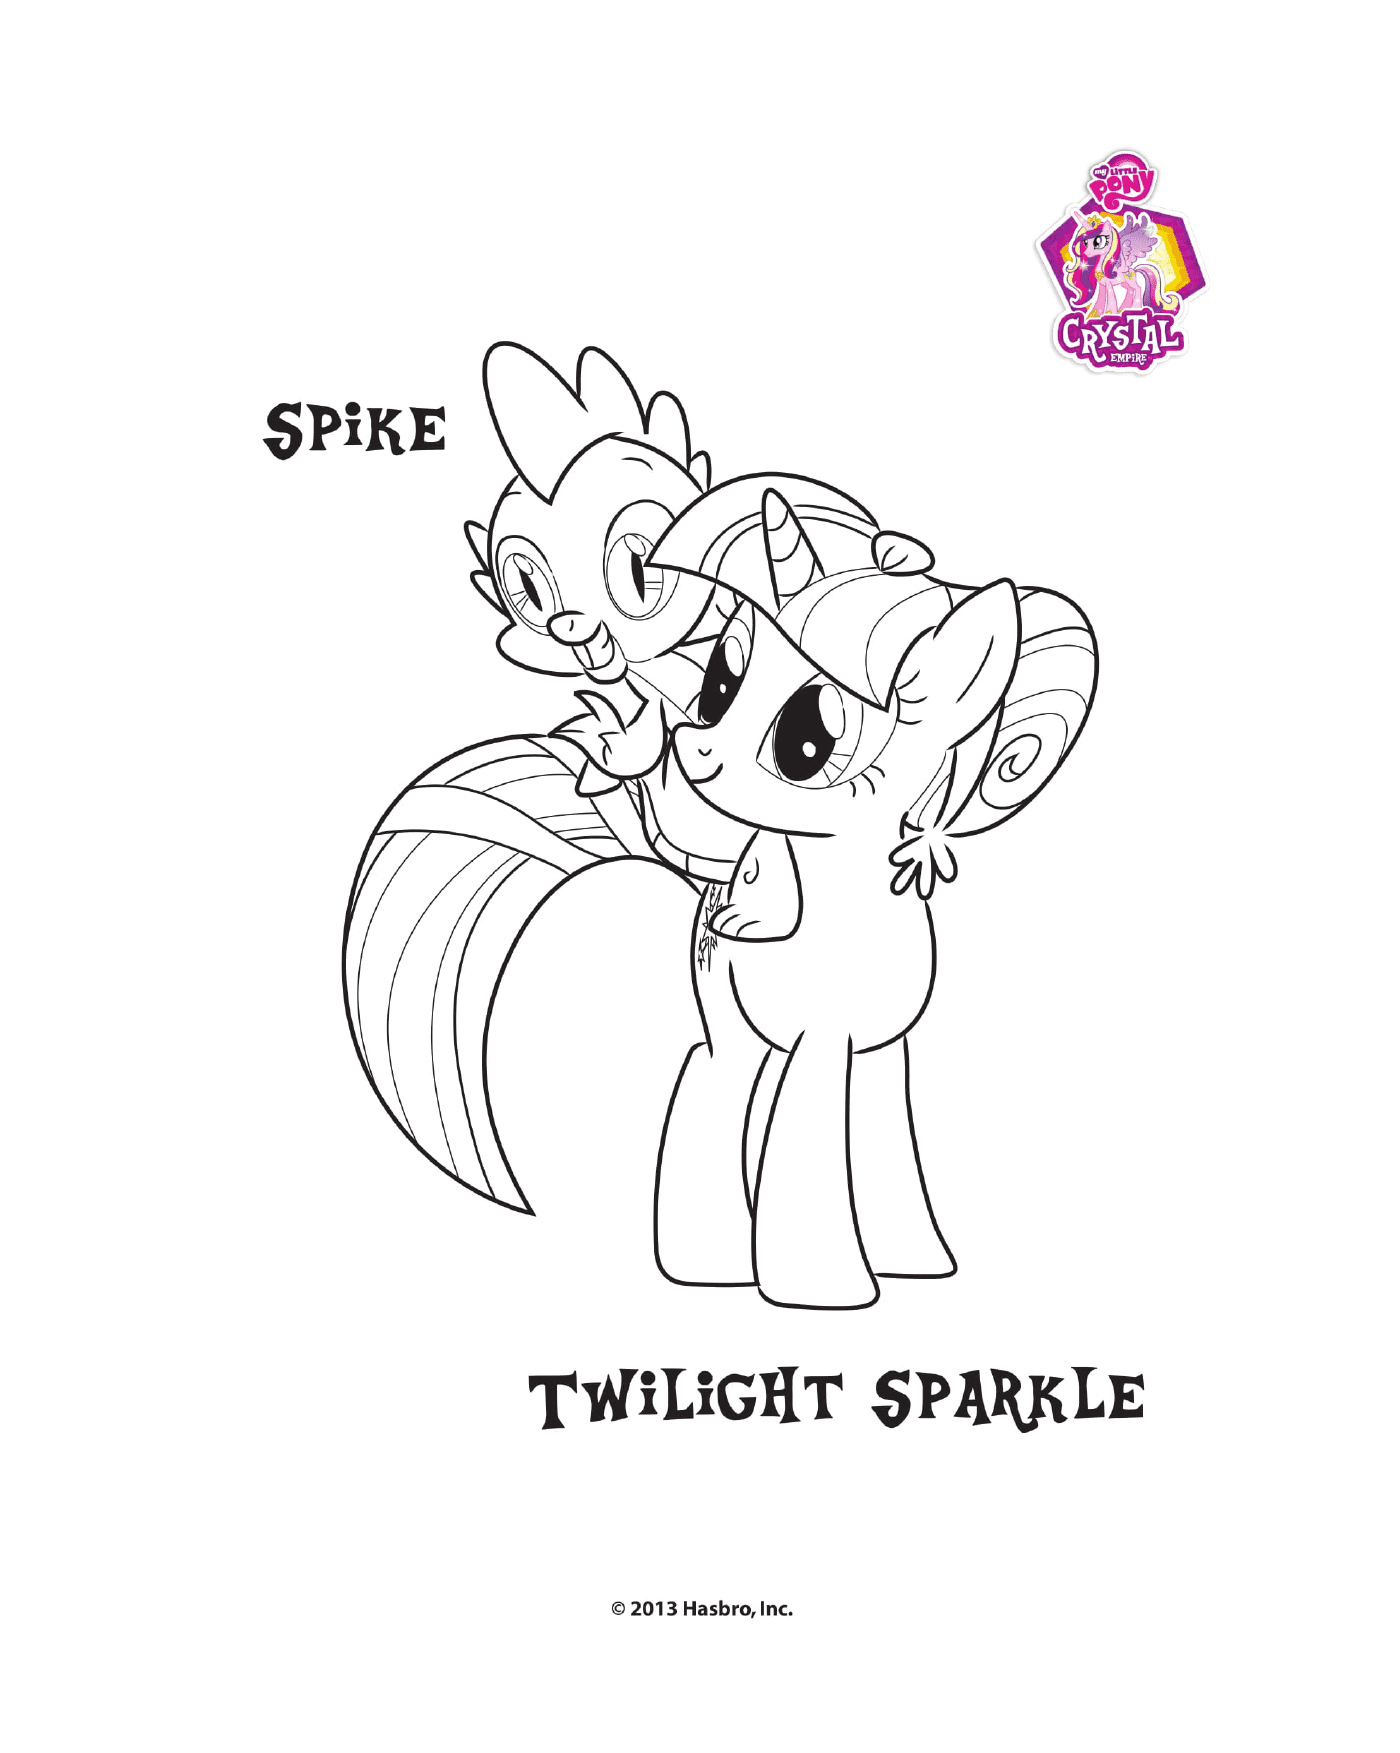  Spike e Twilight brilham no Império Cristal 